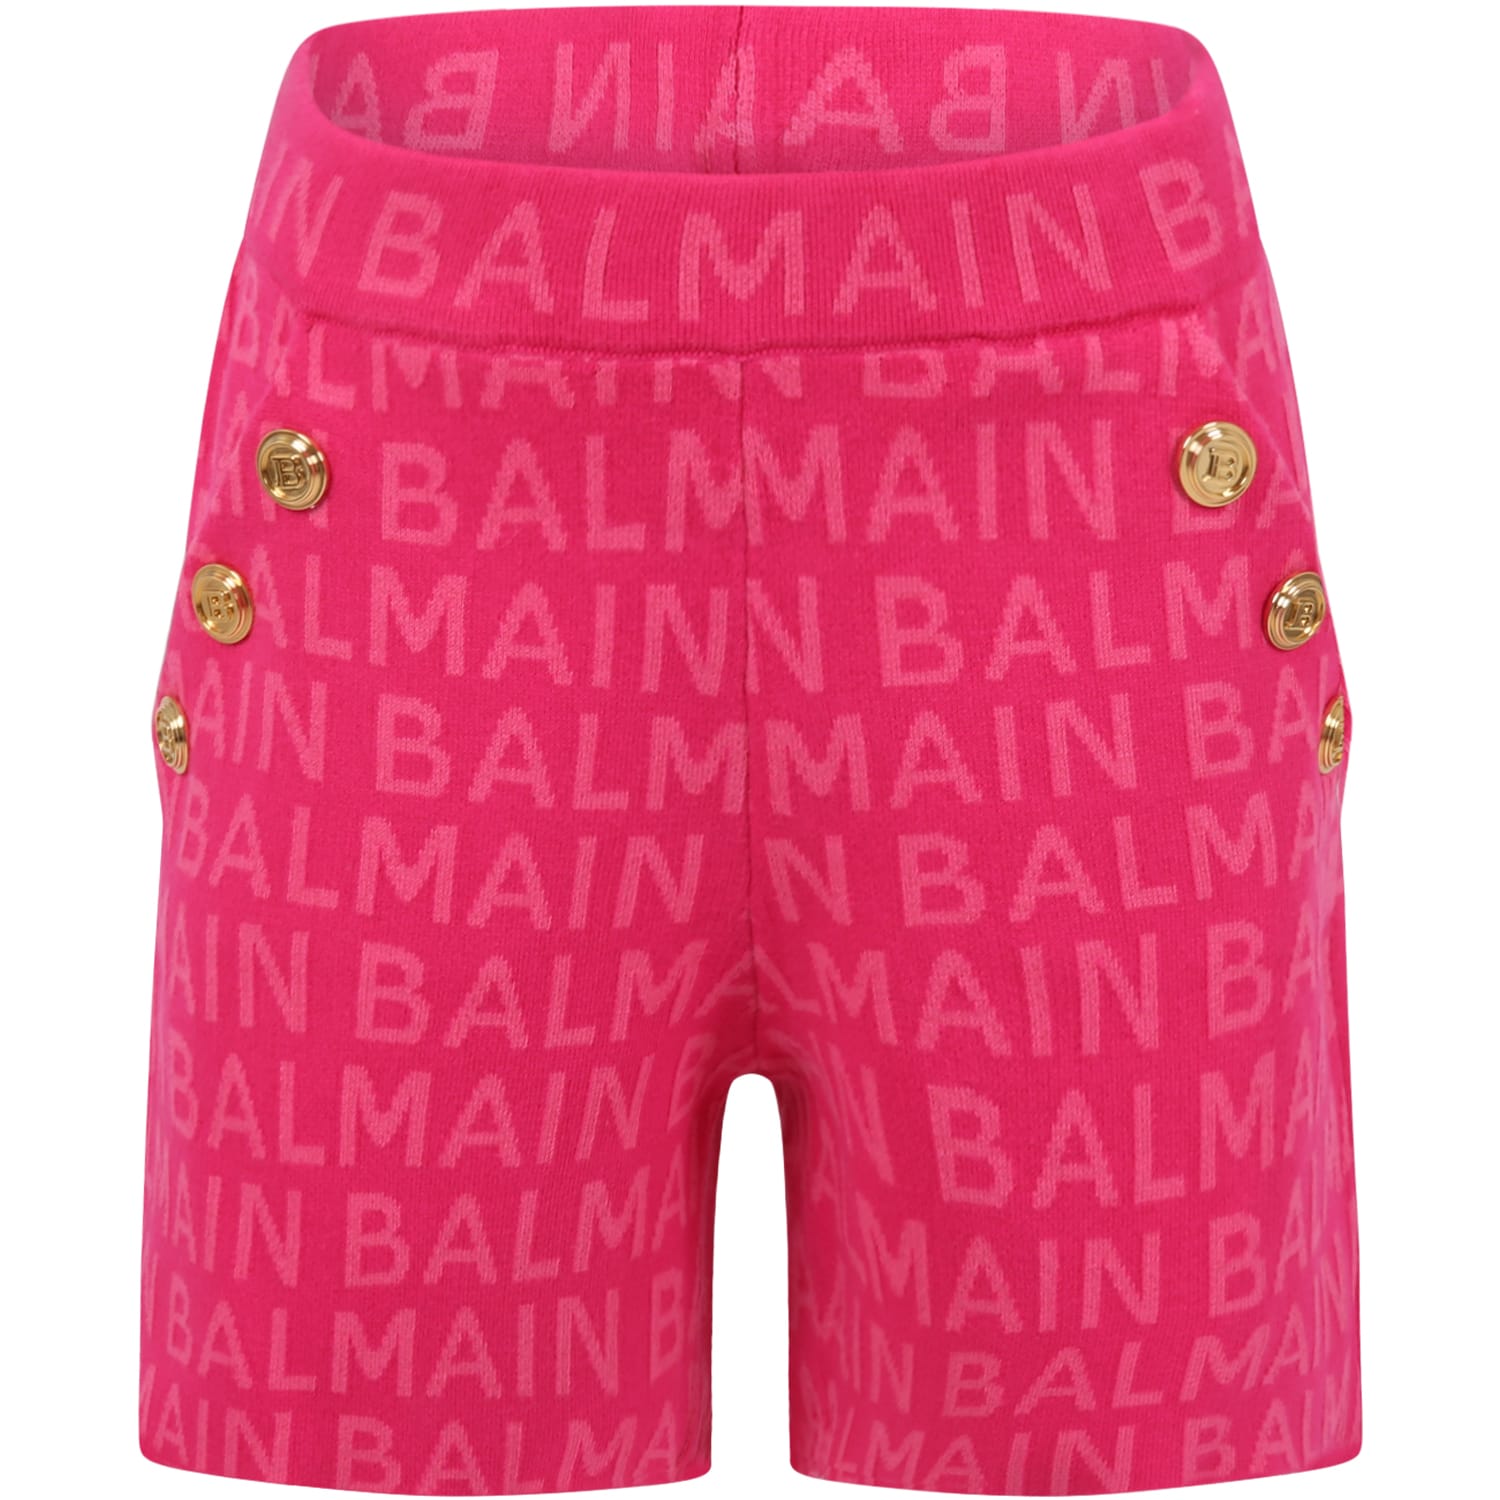 Balmain Fuchsia Short For Girl With Logos